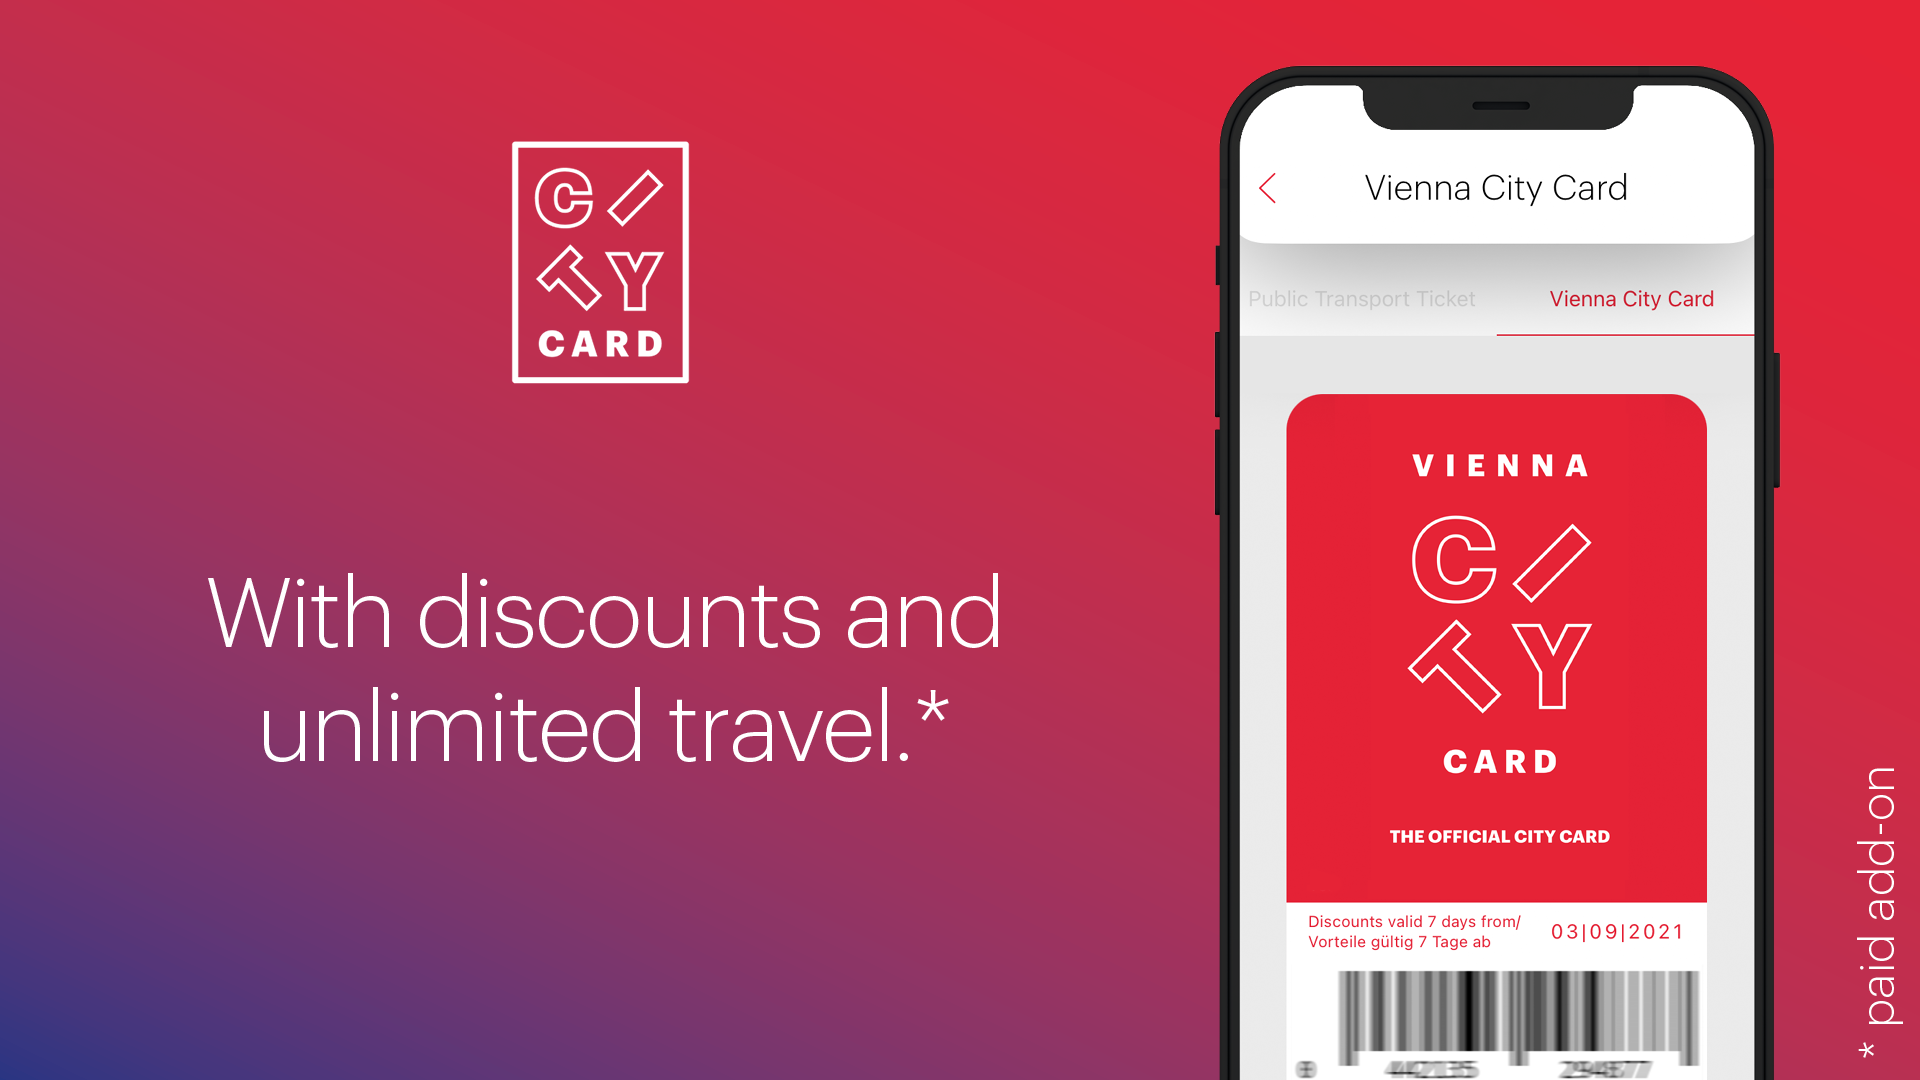 Aplicación de guía urbana ivie – Vienna City Card